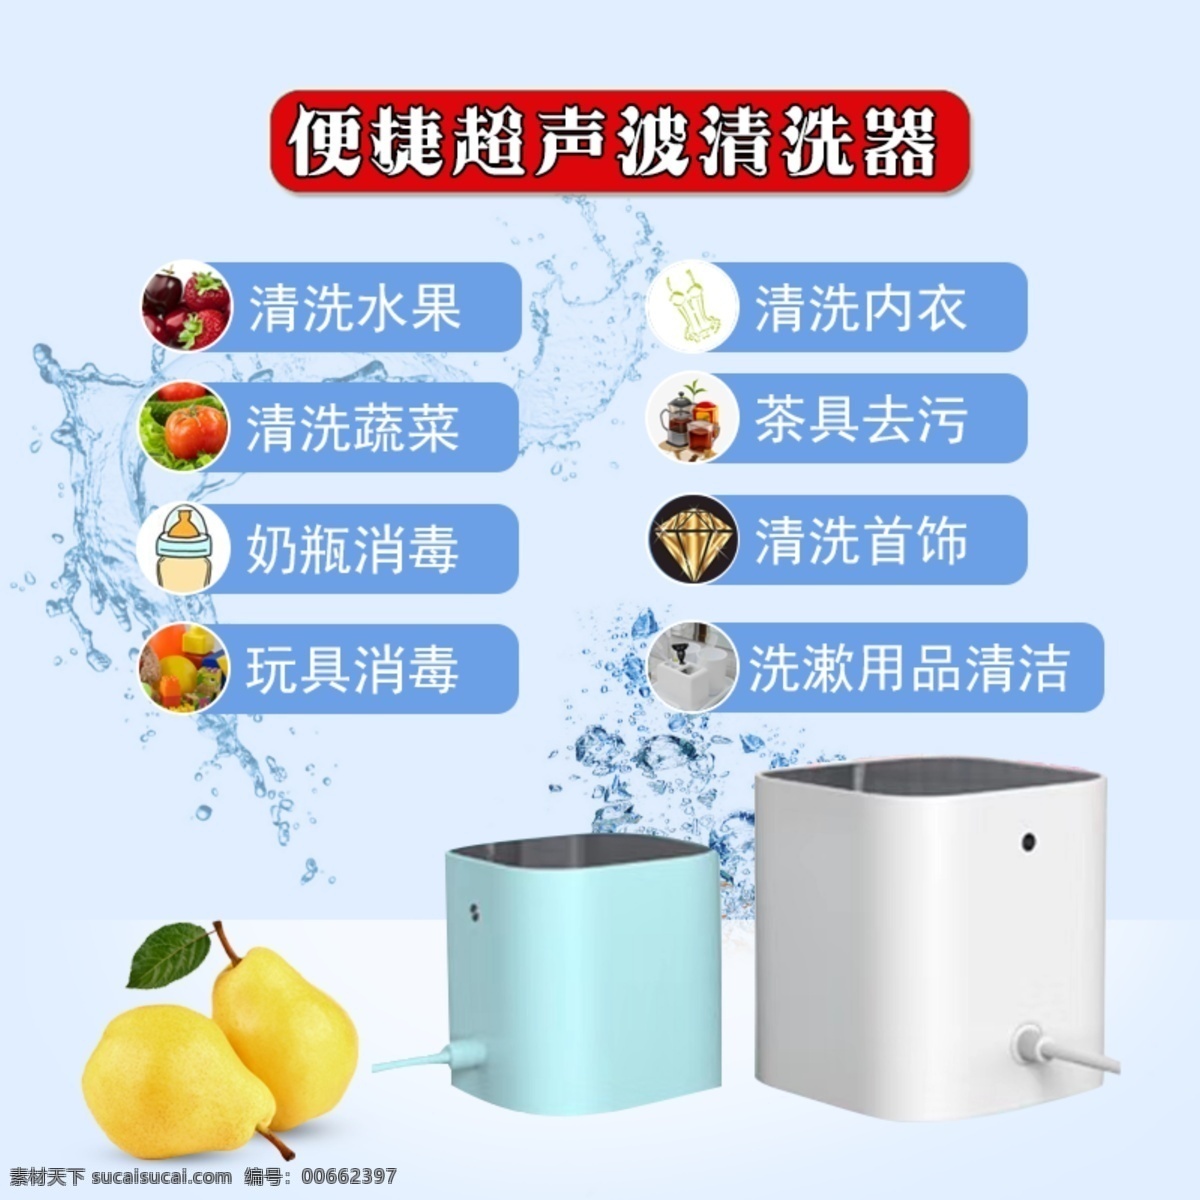 超声波清洗器 果蔬 衣物清洗 奶瓶消毒 茶具 洗漱用品 水气泡 标志图标 其他图标